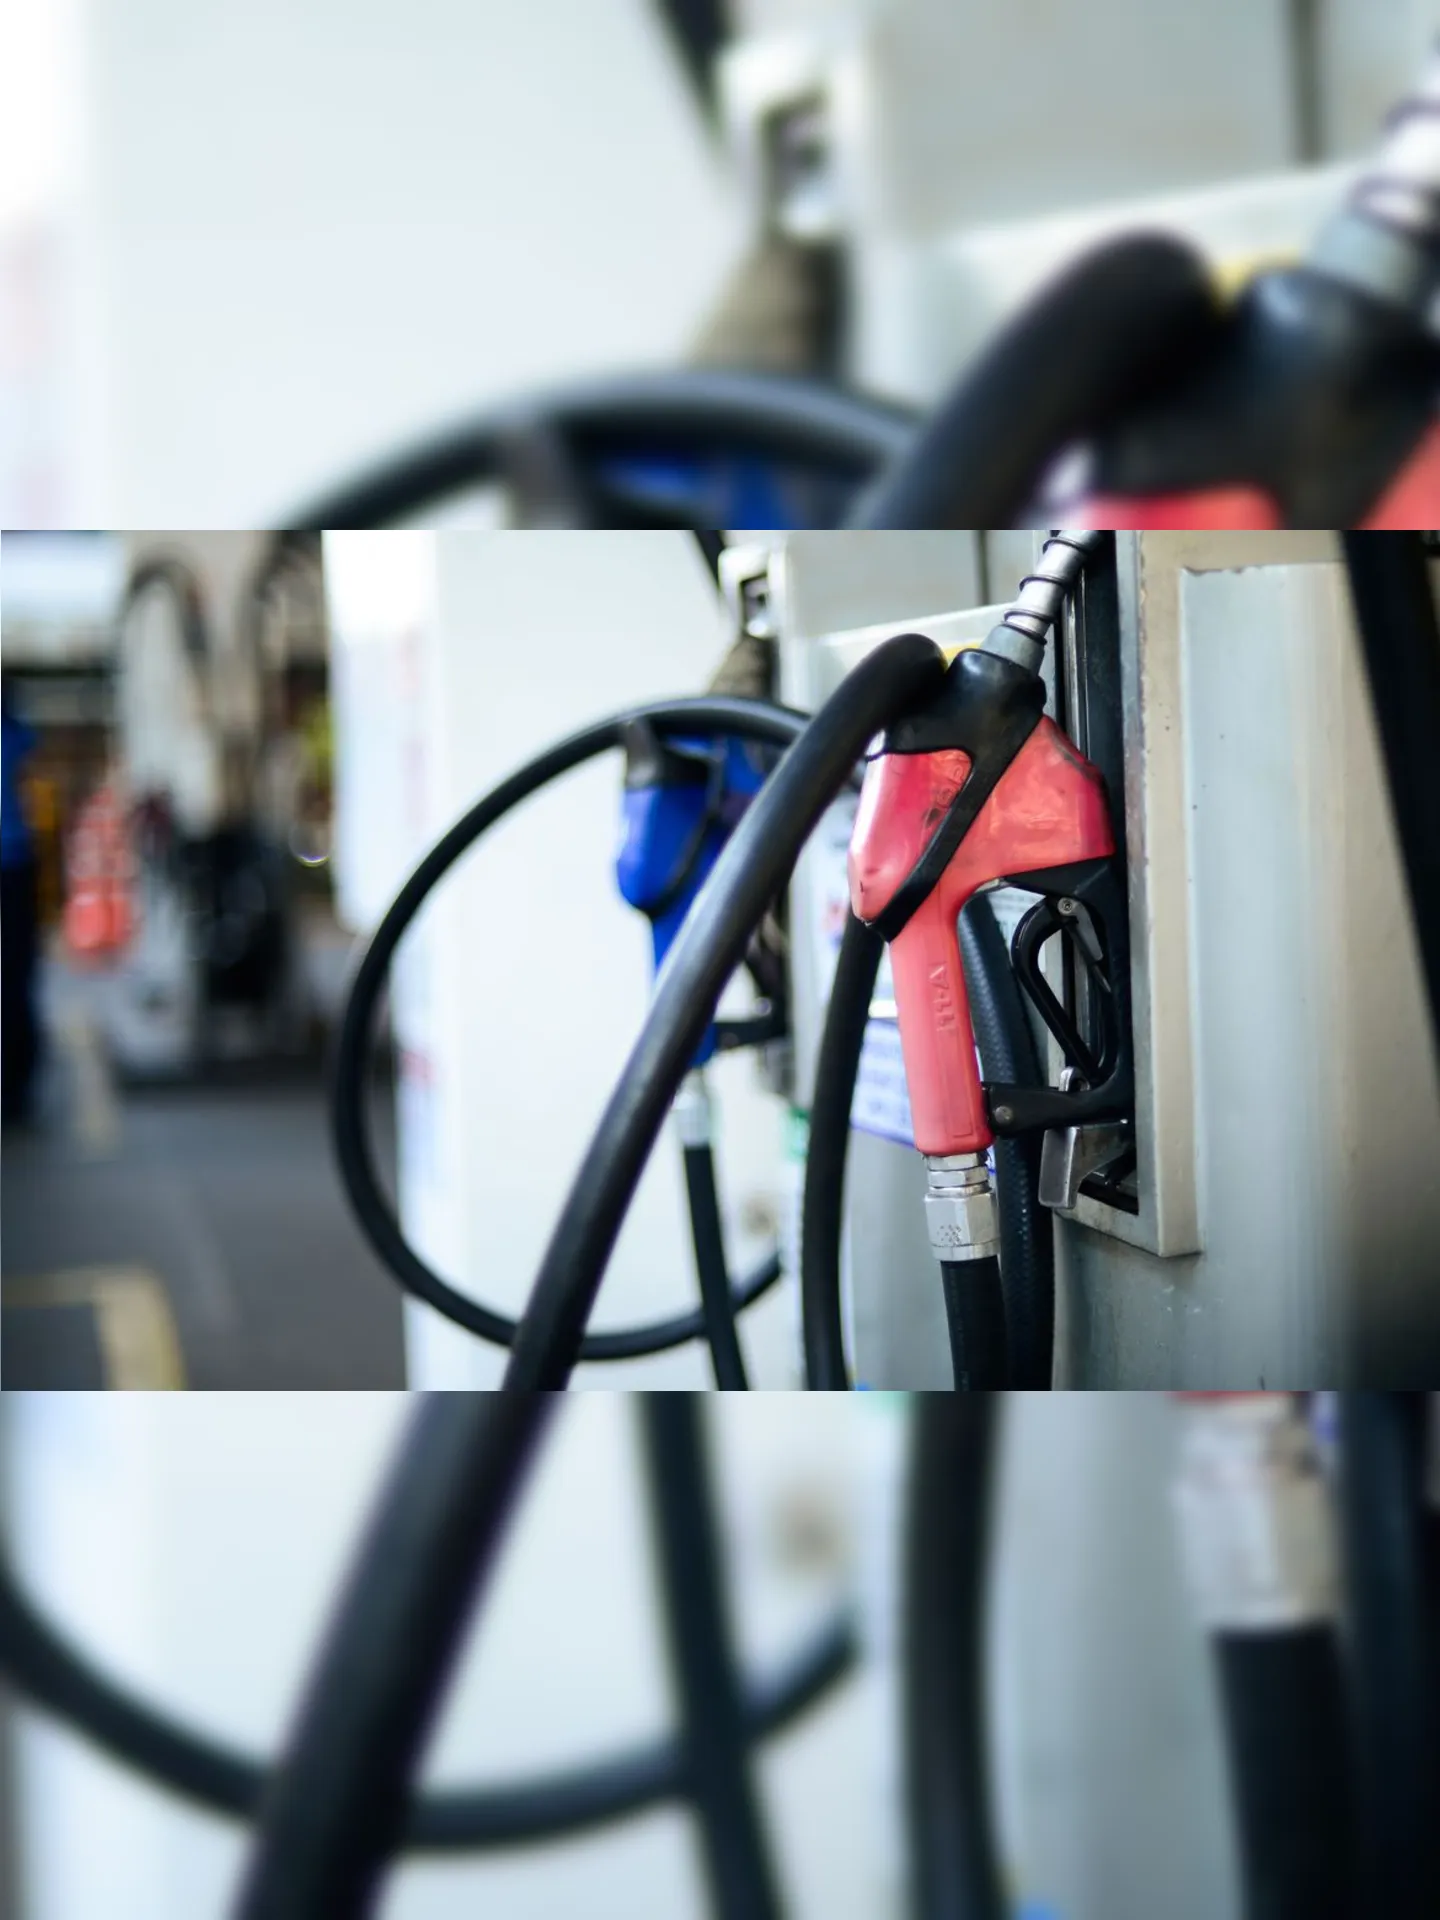 De acordo com a pasta, a medida fará o preço da gasolina cair até R$ 0,20 para o consumidor.